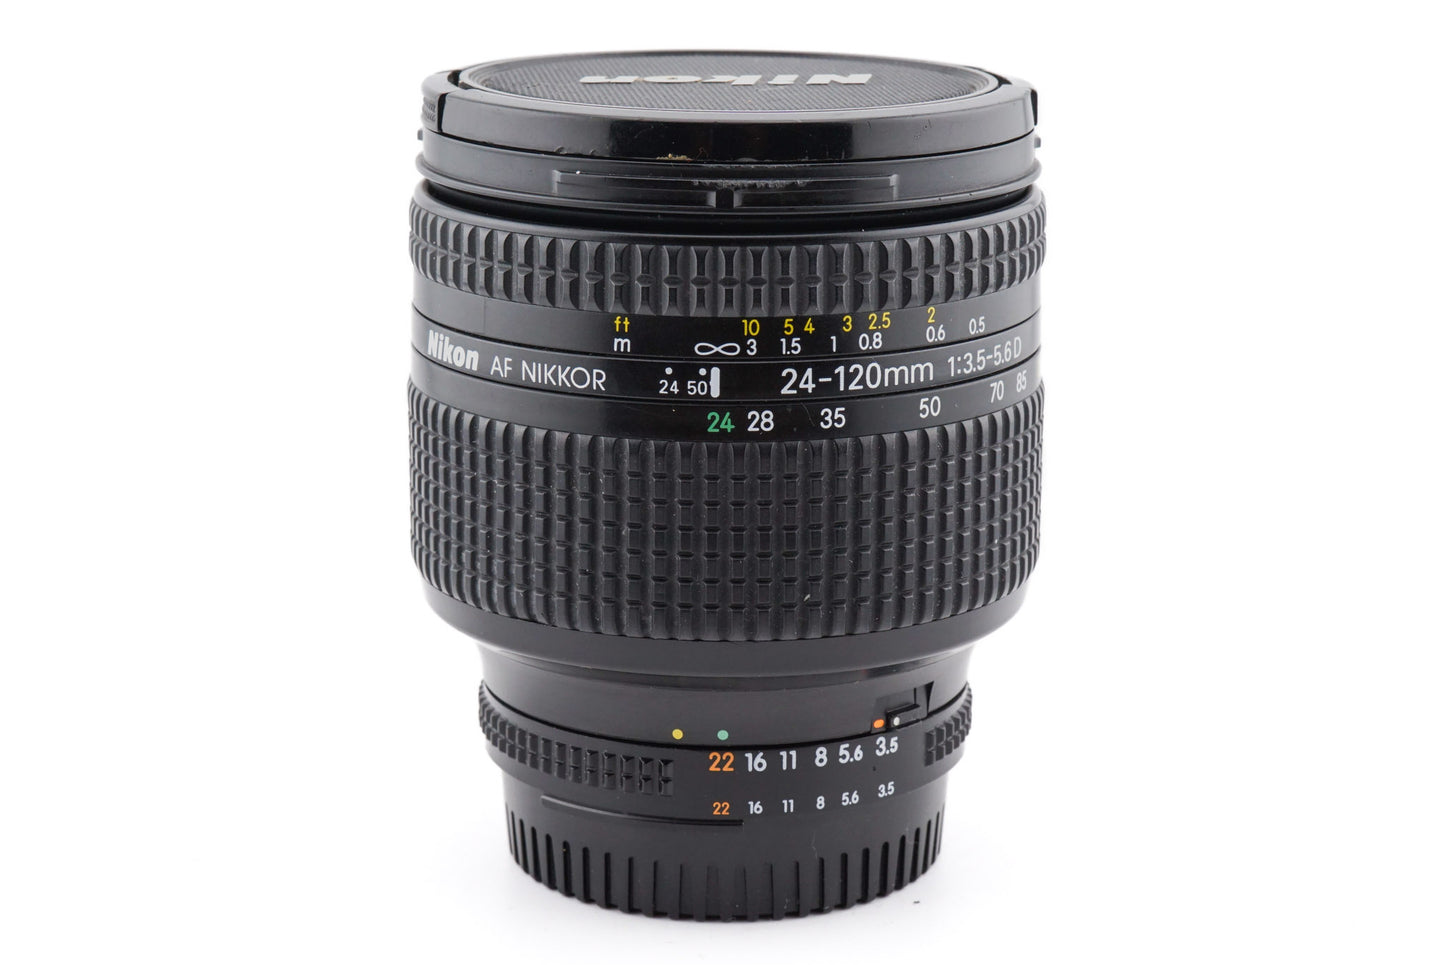 Nikon 24-120mm f3.5-5.6 D AF Nikkor - Lens